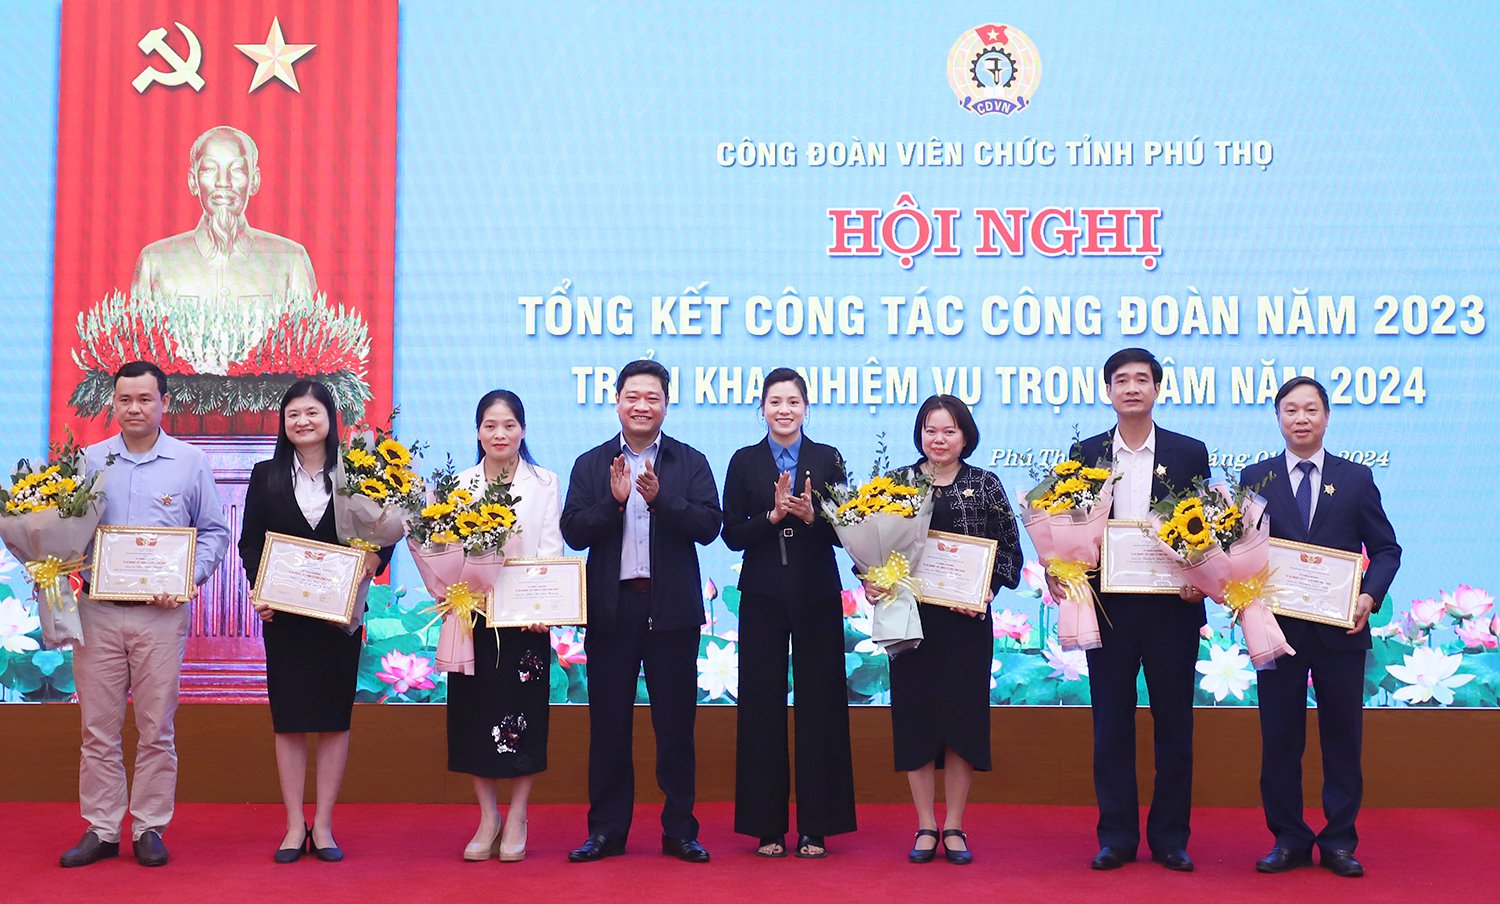 Công đoàn Viên chức tỉnh Phú Thọ tổ chức Hội nghị Tổng kết công tác công đoàn năm 2023